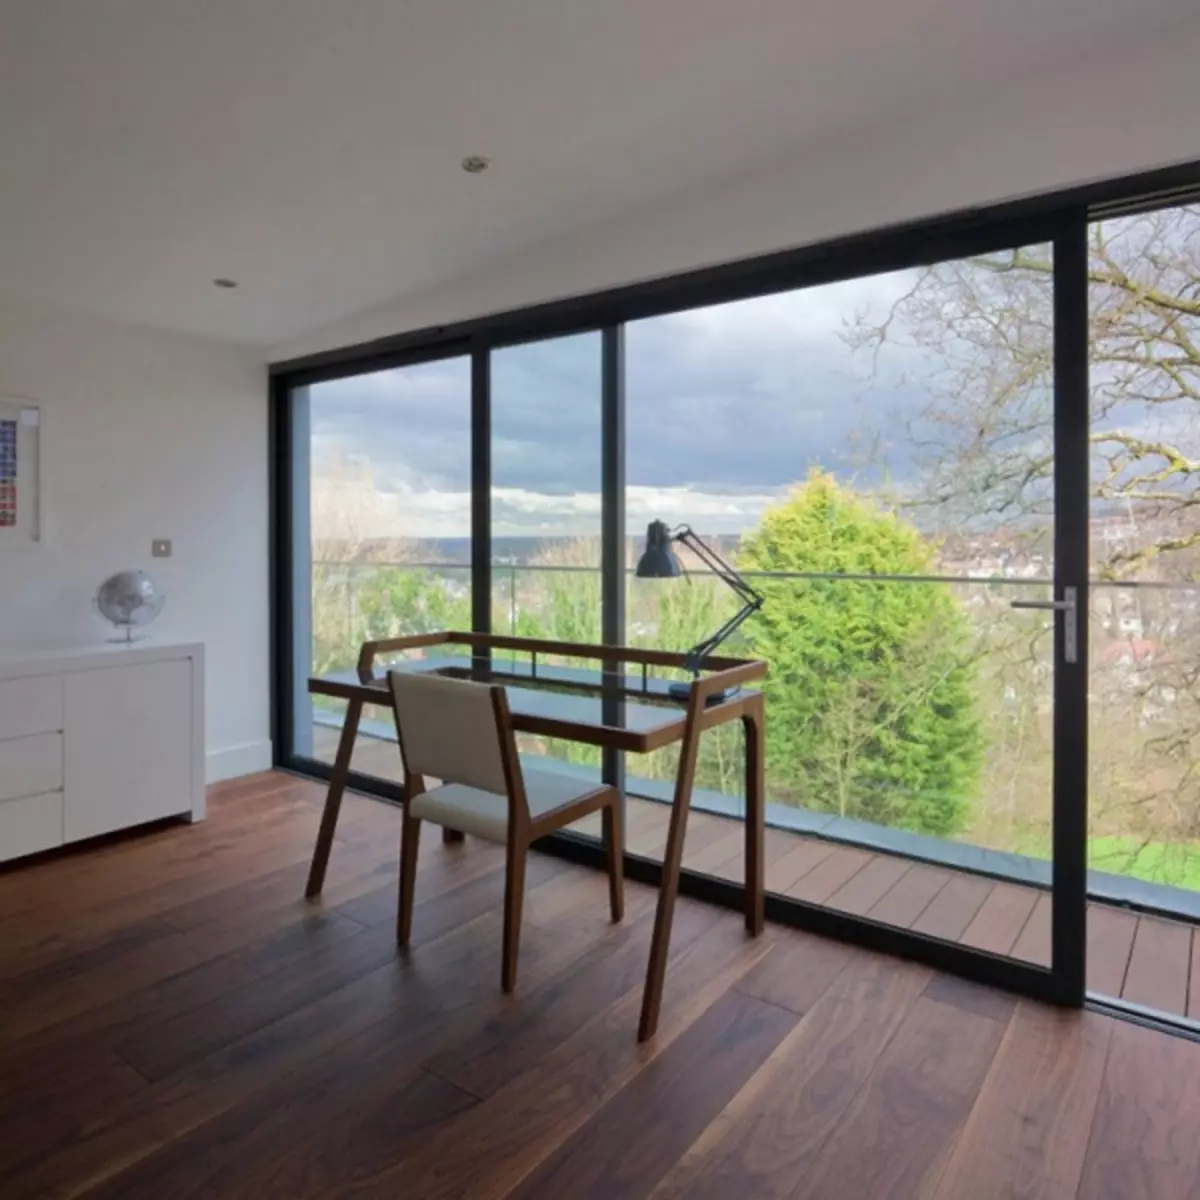 İç mekanda panoramik pencereler: Evdeki alan ve dairenin tasarımında çerçeveleme ve kullanım seçeneklerinde (47 fotoğraf)